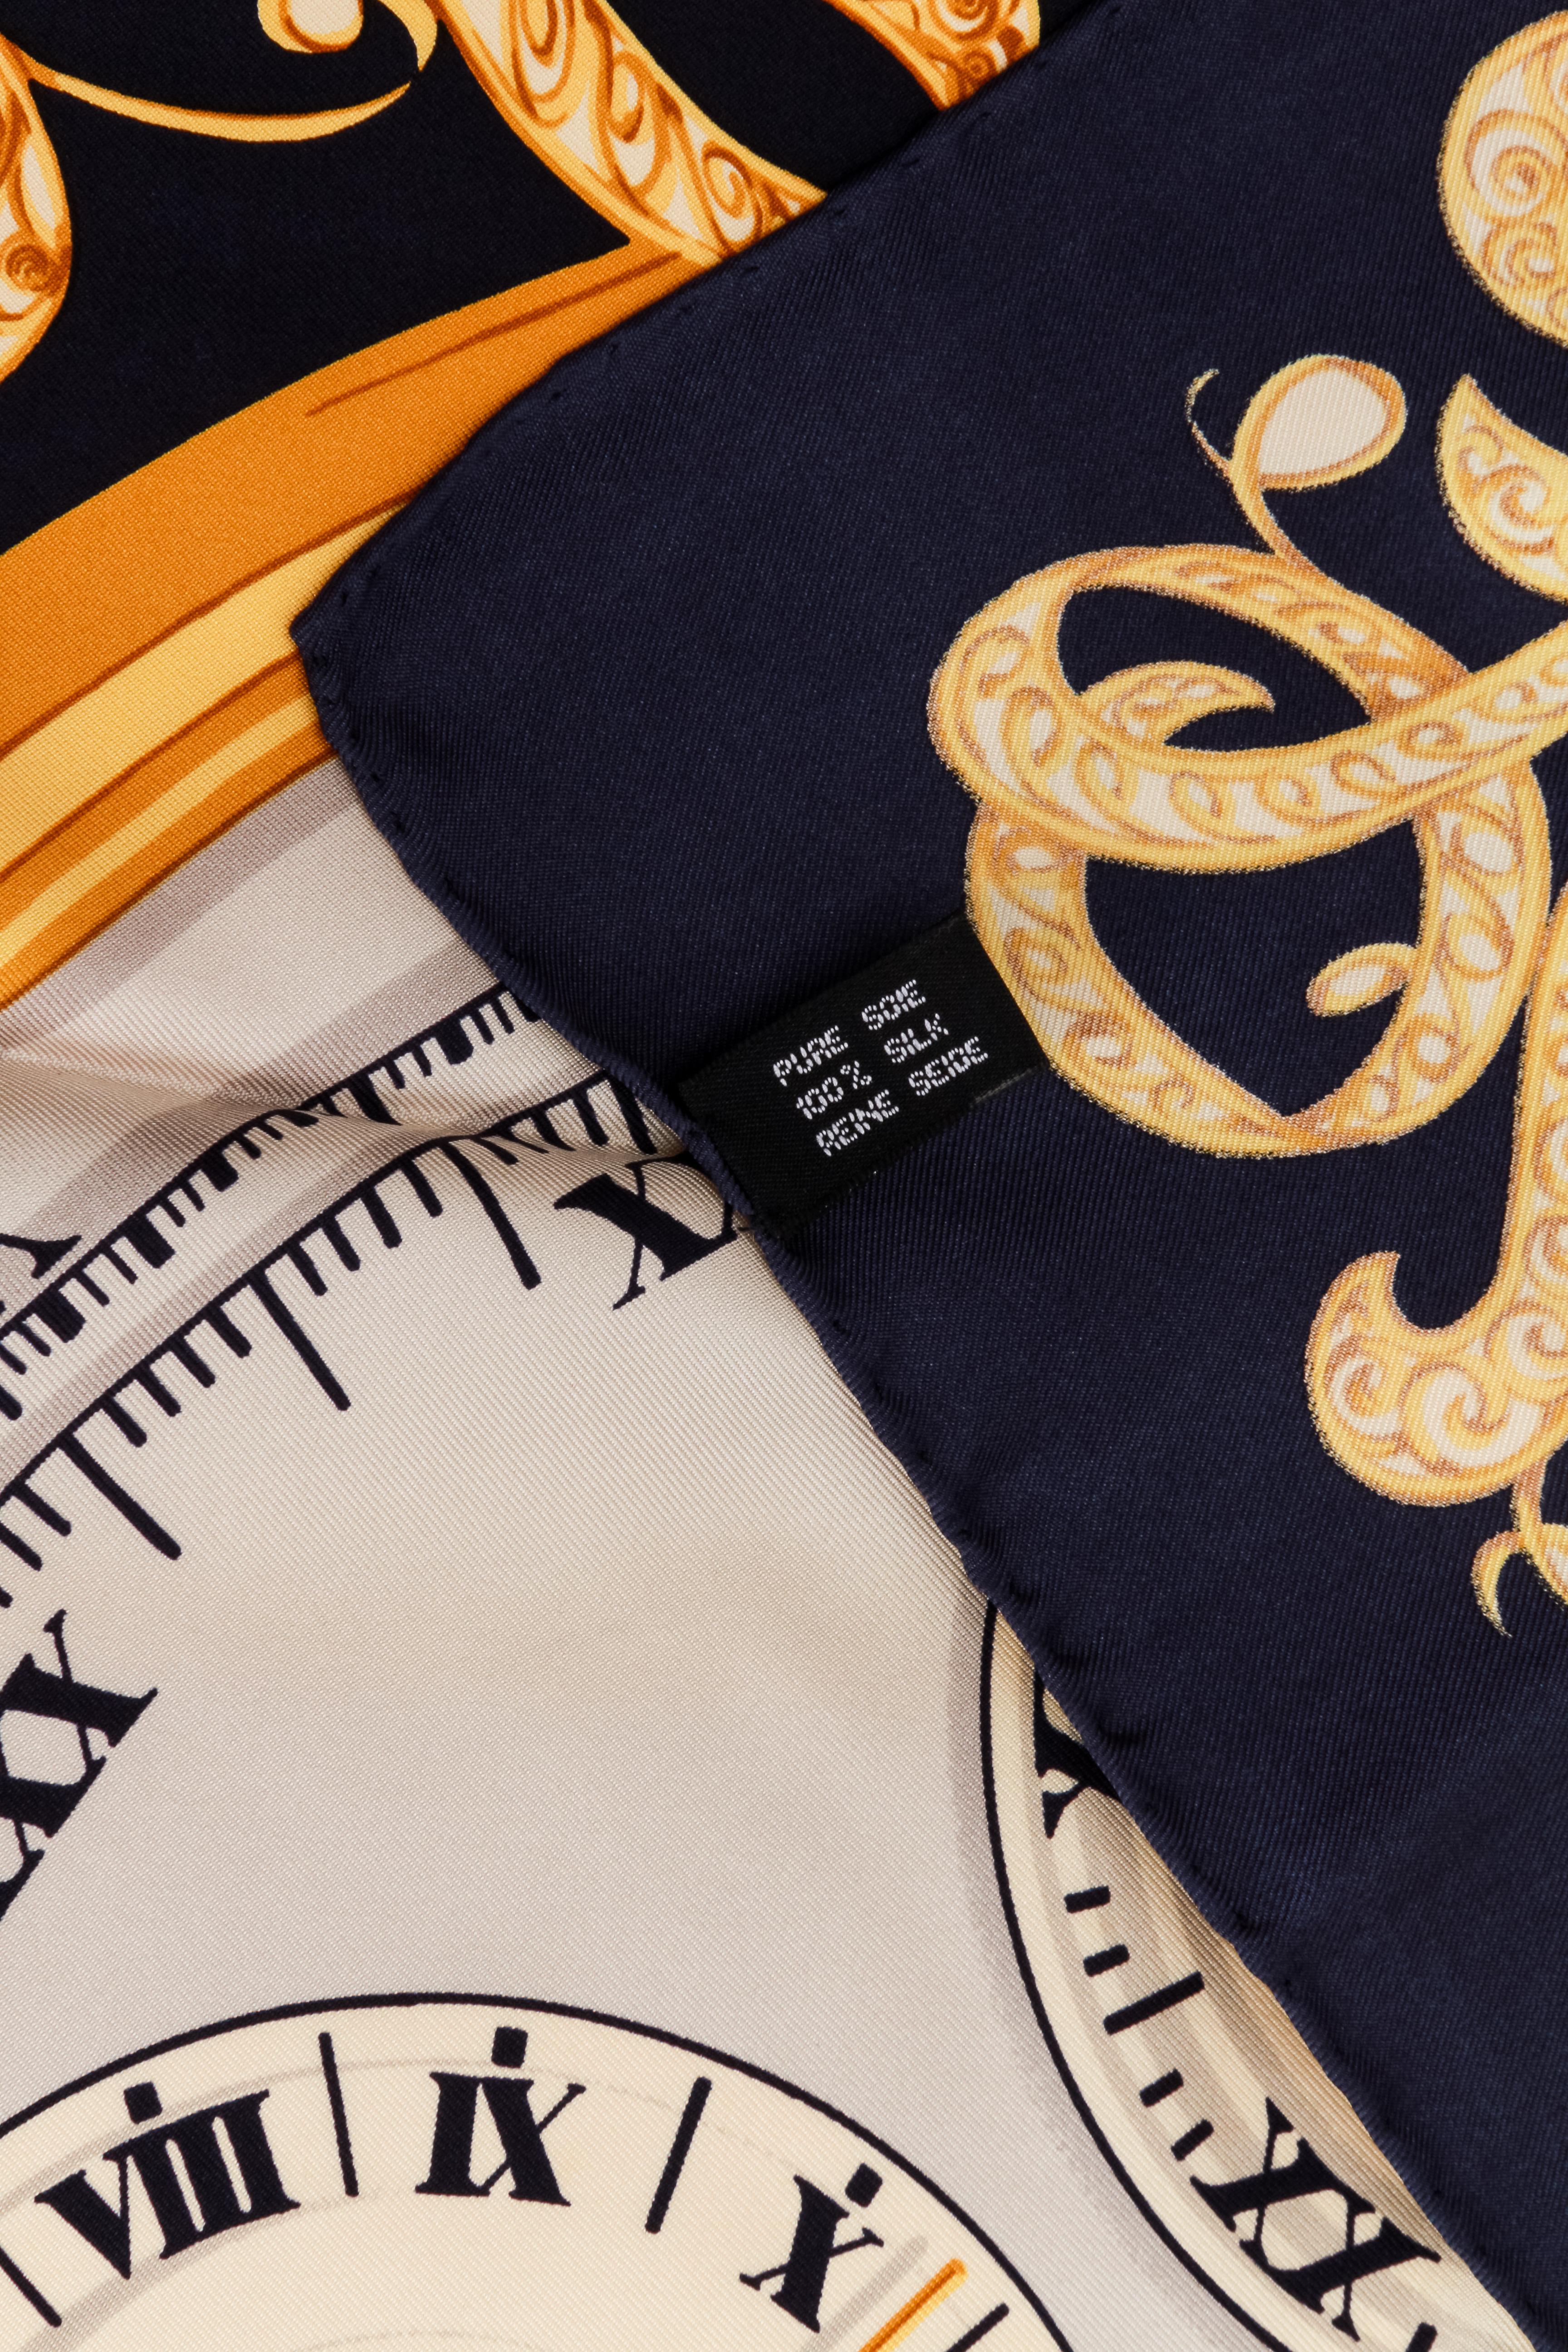 Foulard en soie Christian Dior prélavé. Design d'horloges blanches, bleues et jaunes. Bords roulés à la main.